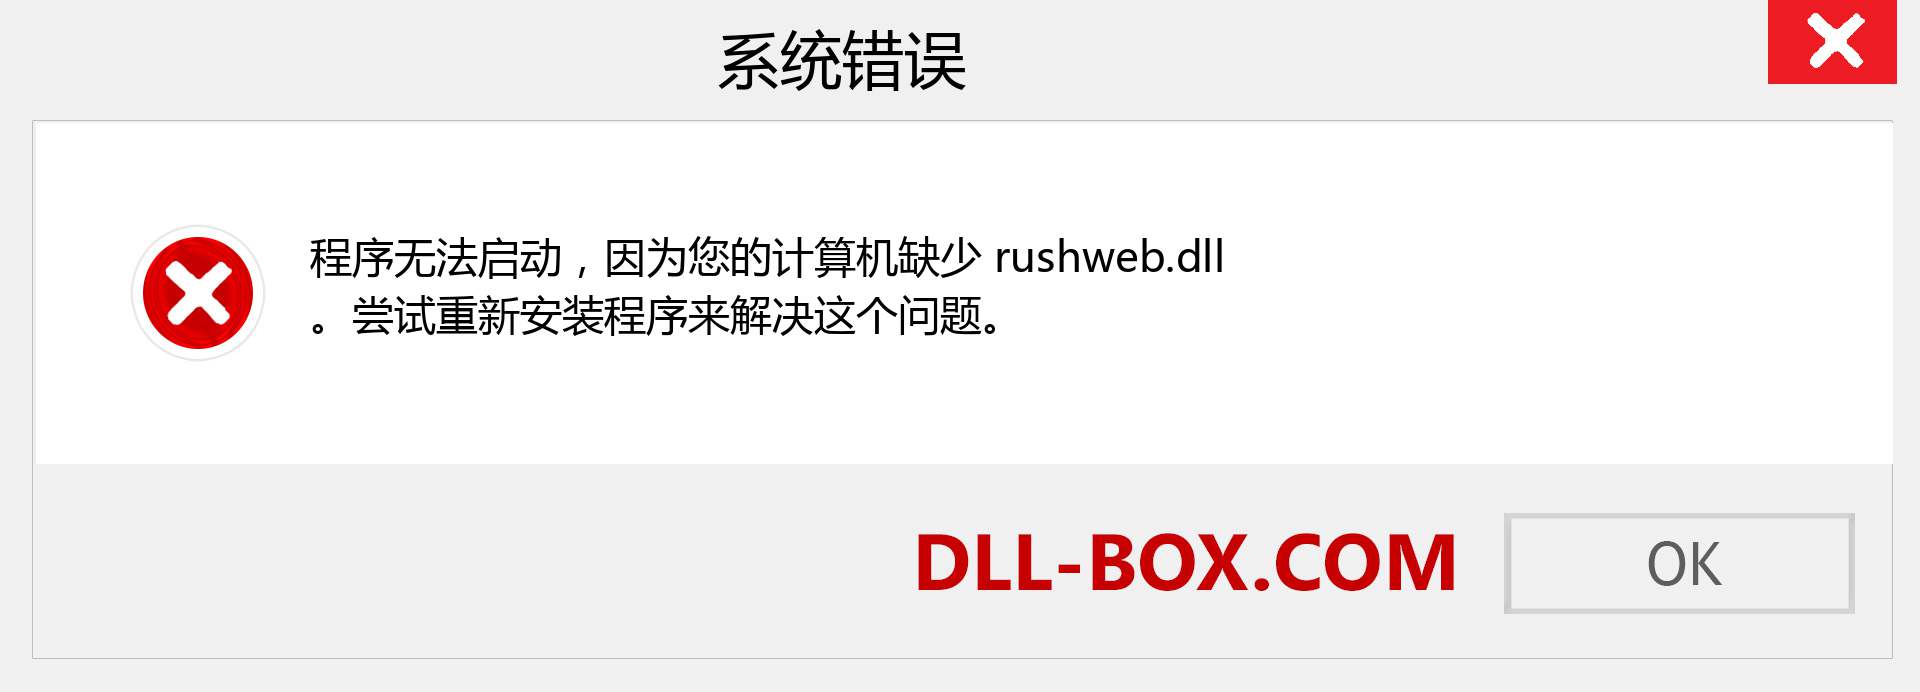 rushweb.dll 文件丢失？。 适用于 Windows 7、8、10 的下载 - 修复 Windows、照片、图像上的 rushweb dll 丢失错误